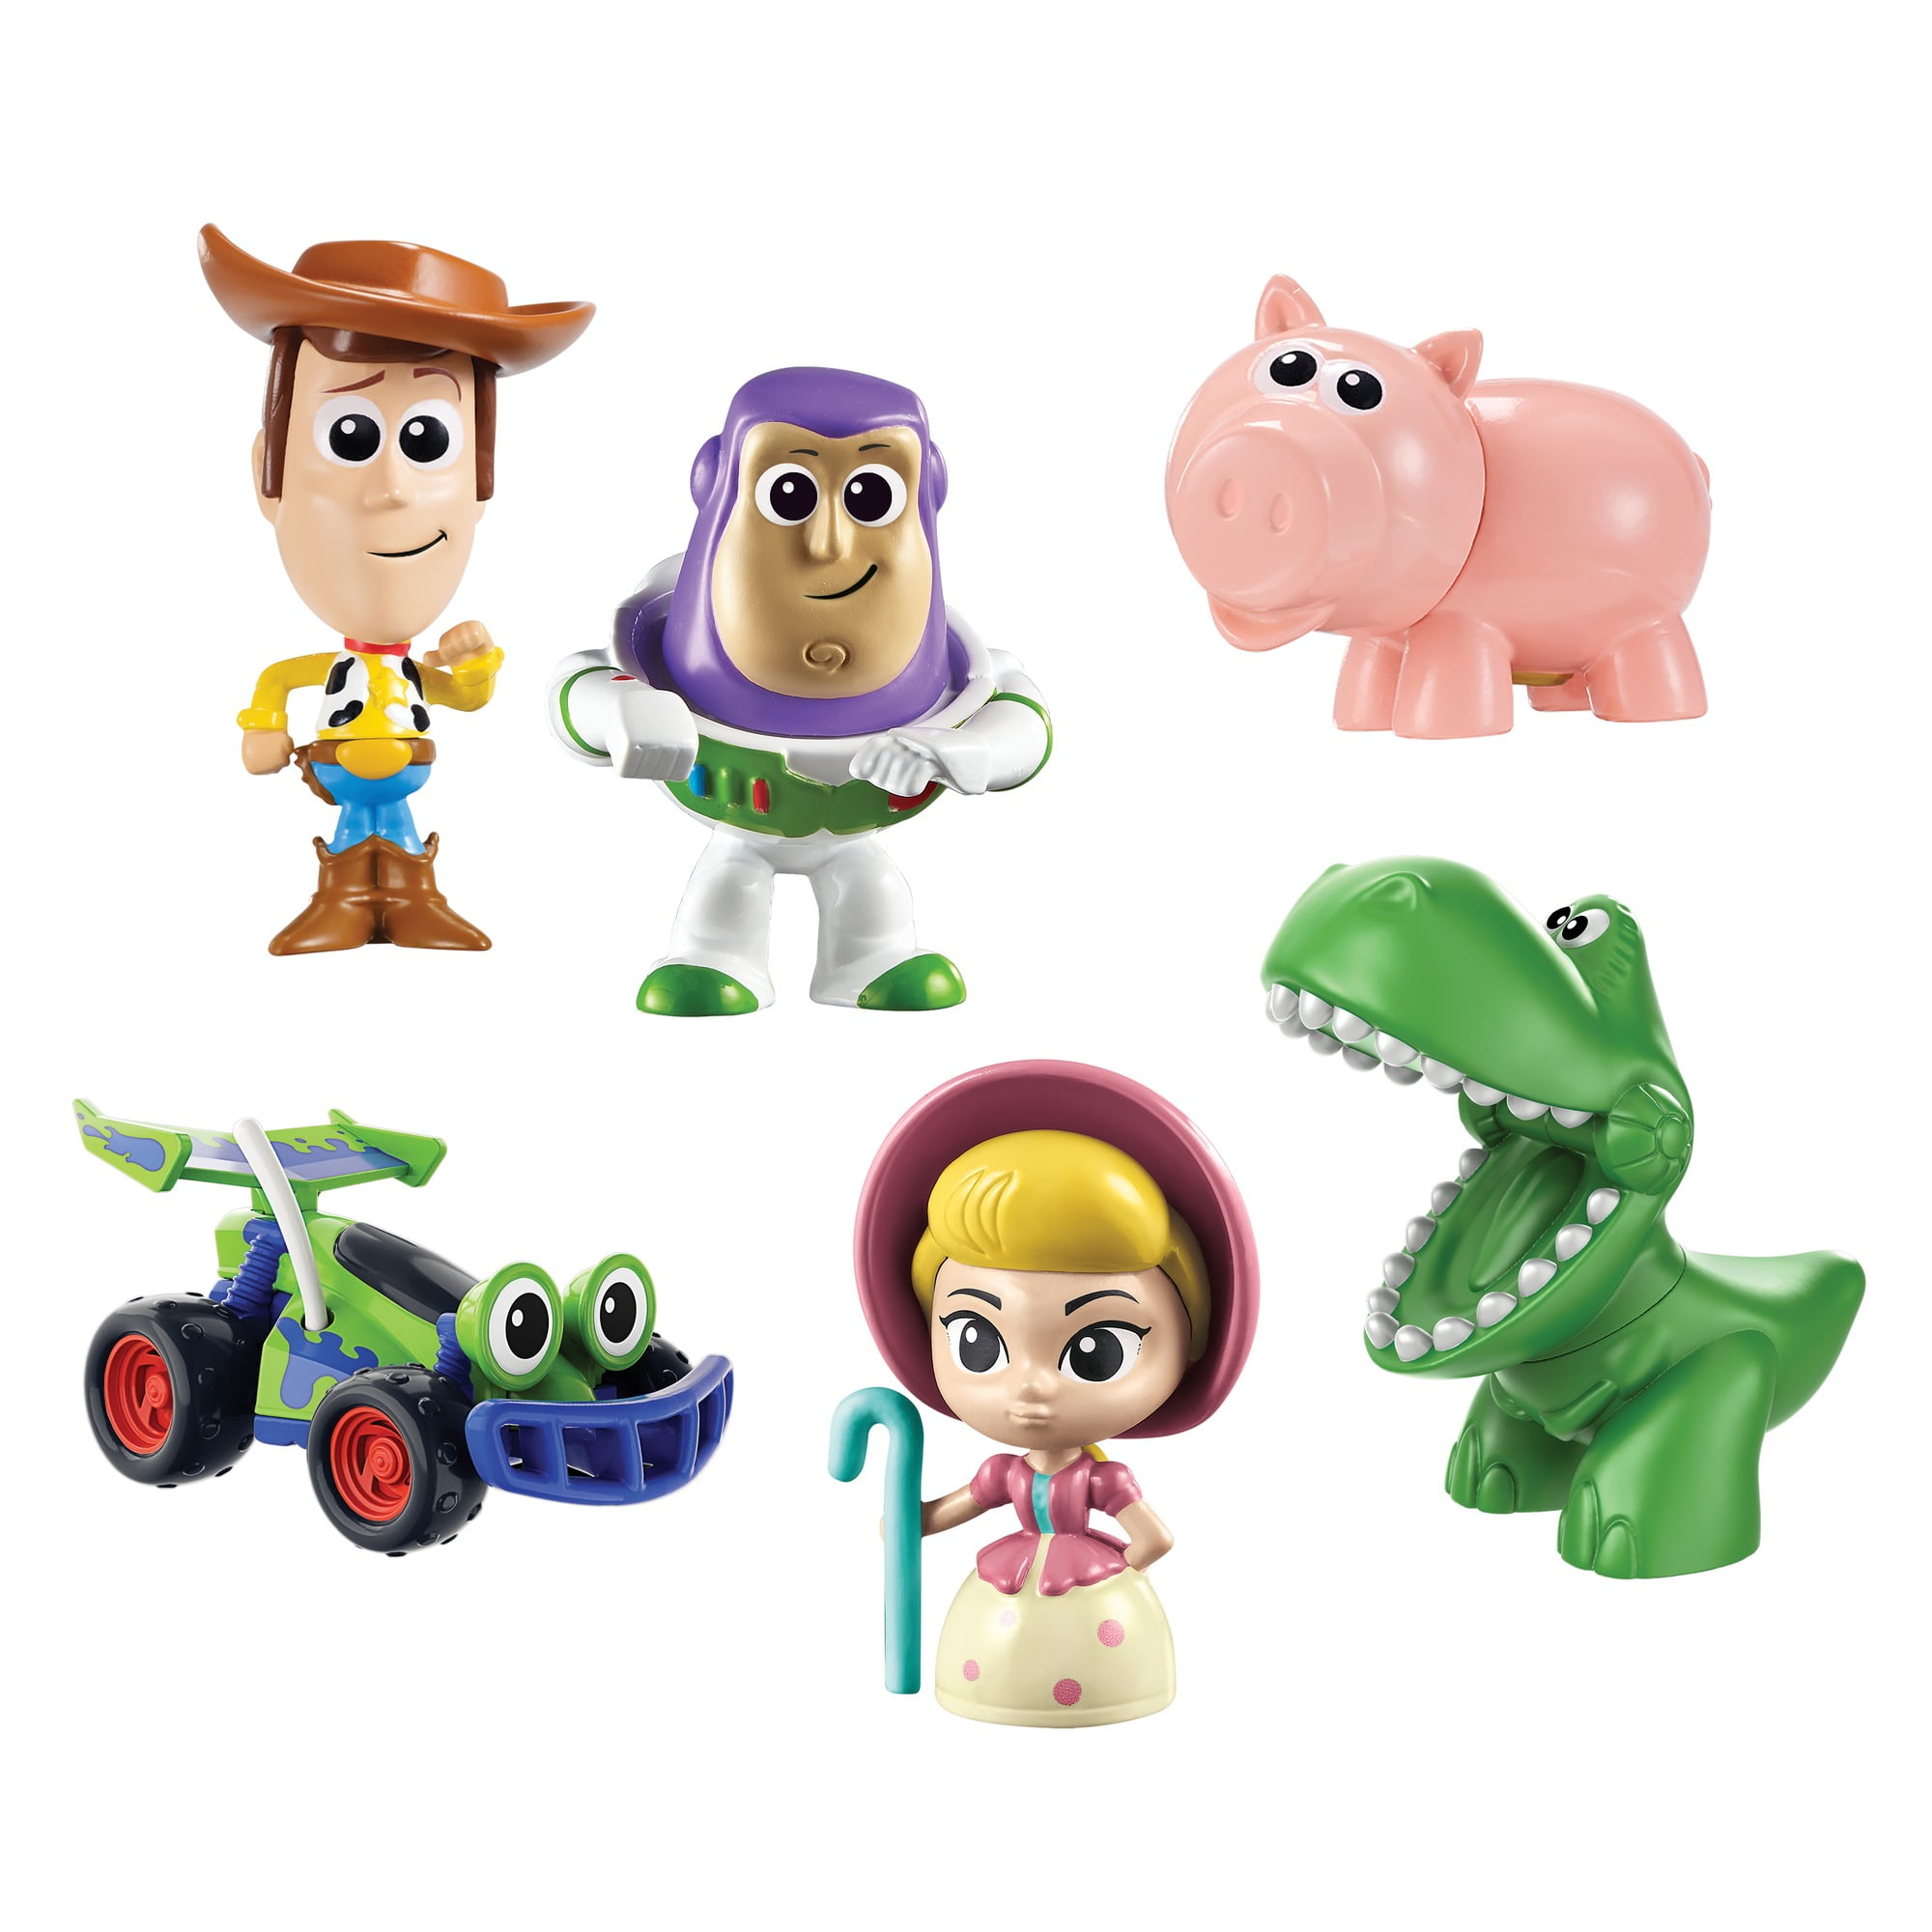 Disney Pixar Toy Story Space Aliens Figure Set, 1 Unit - Kroger